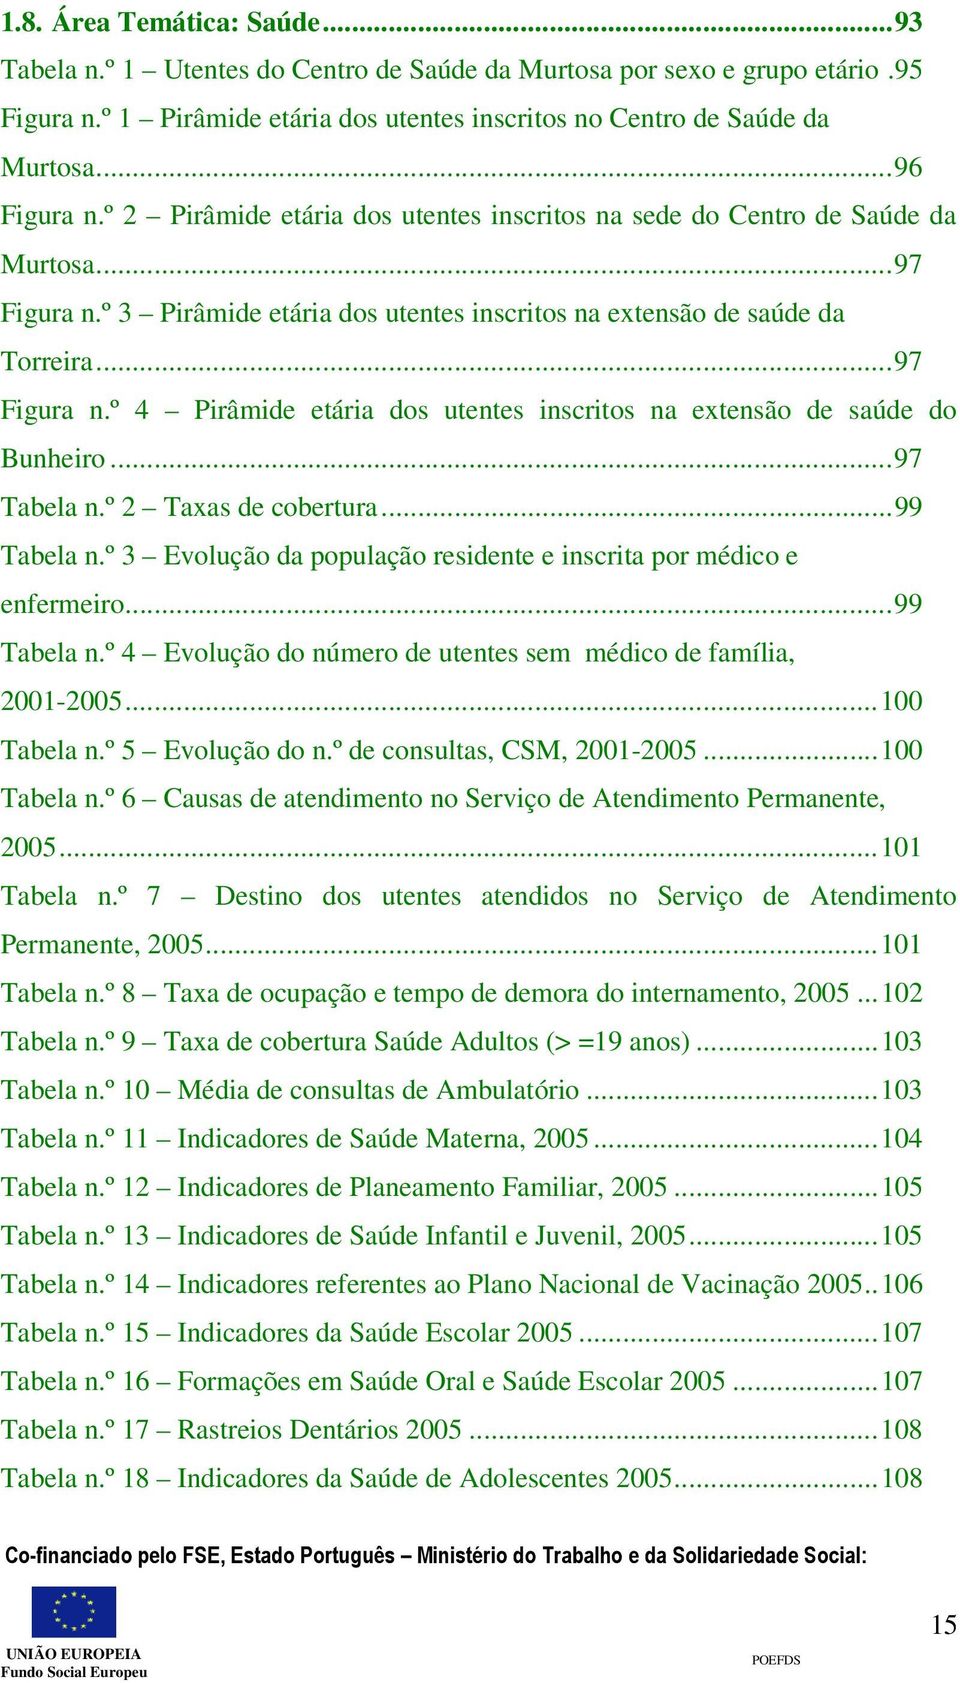 ..97 Tabela n.º 2 Taxas de cobertura...99 Tabela n.º 3 Evolução da população residente e inscrita por médico e enfermeiro...99 Tabela n.º 4 Evolução do número de utentes sem médico de família, 2001-2005.